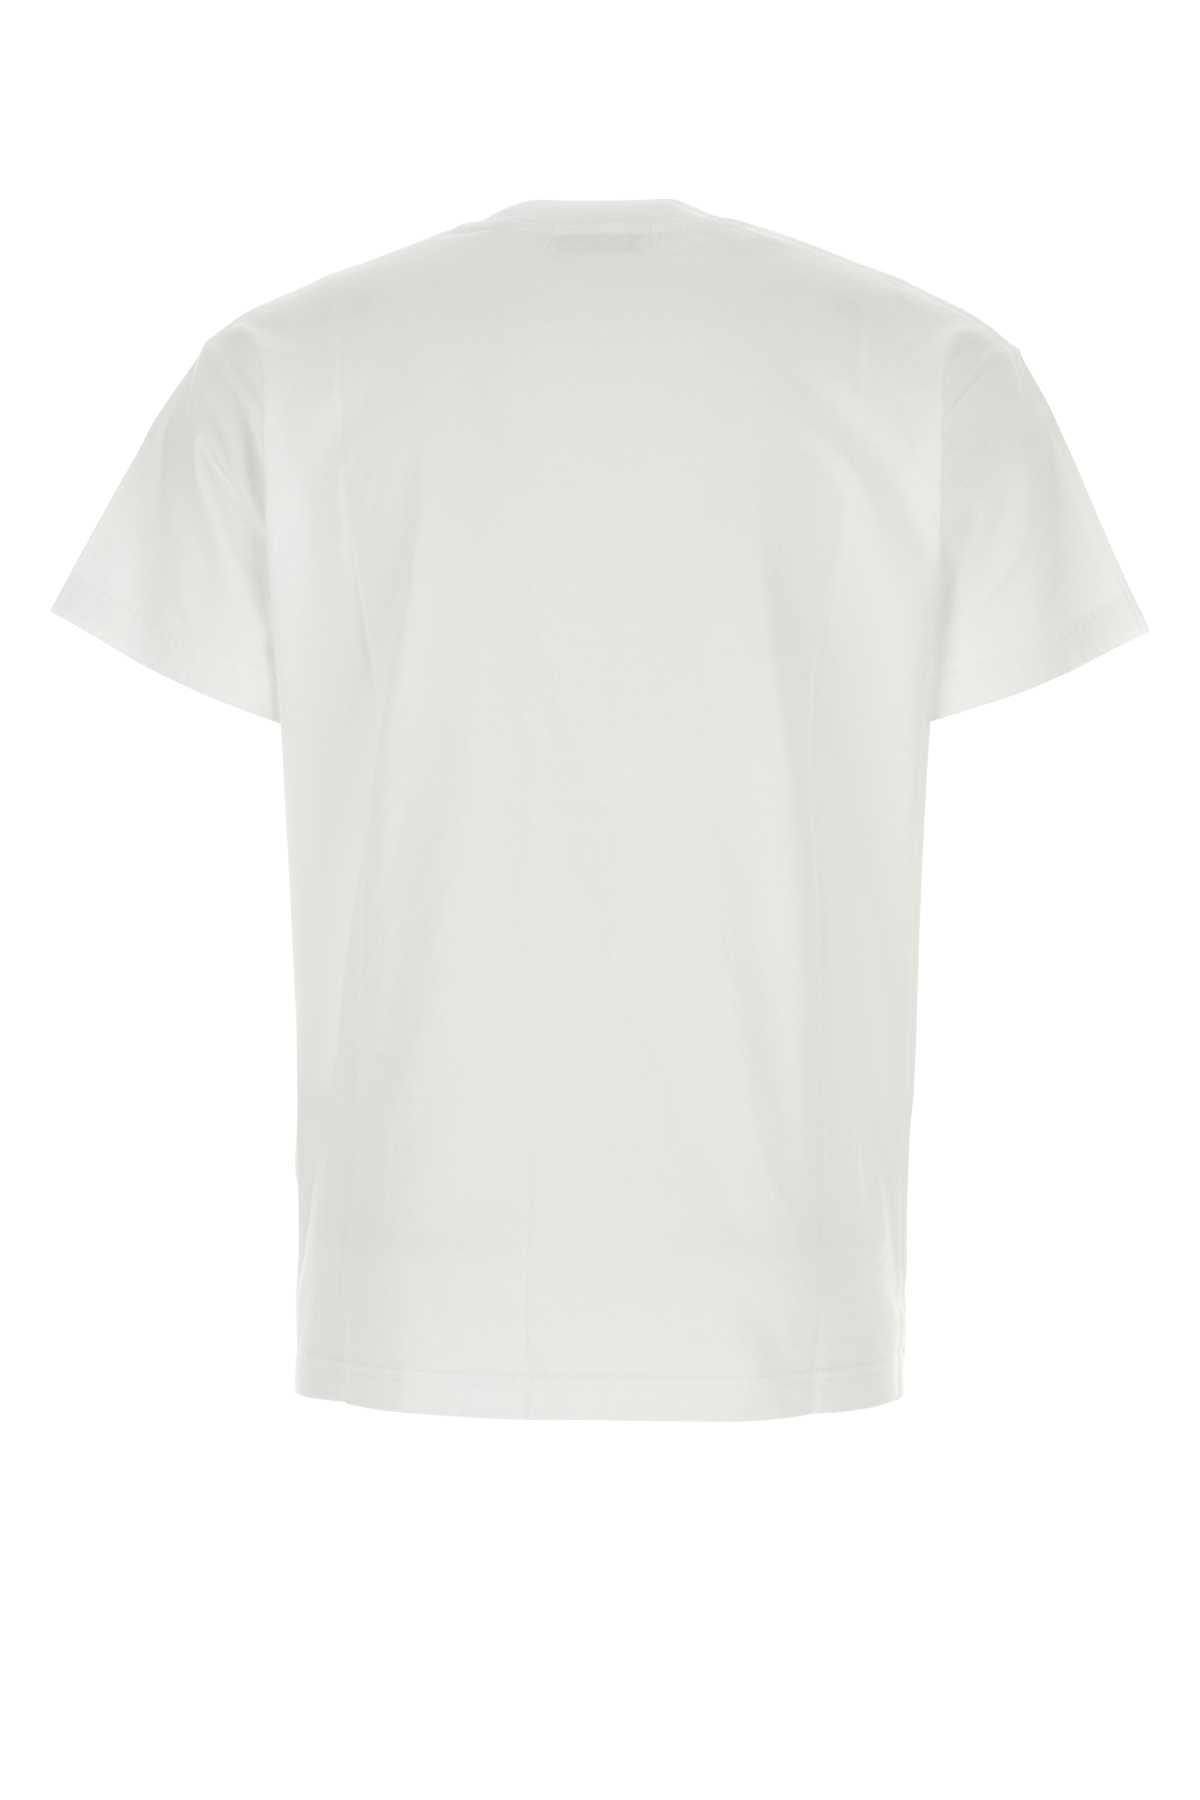 Shop Ambush White Cotton T-shirt Set